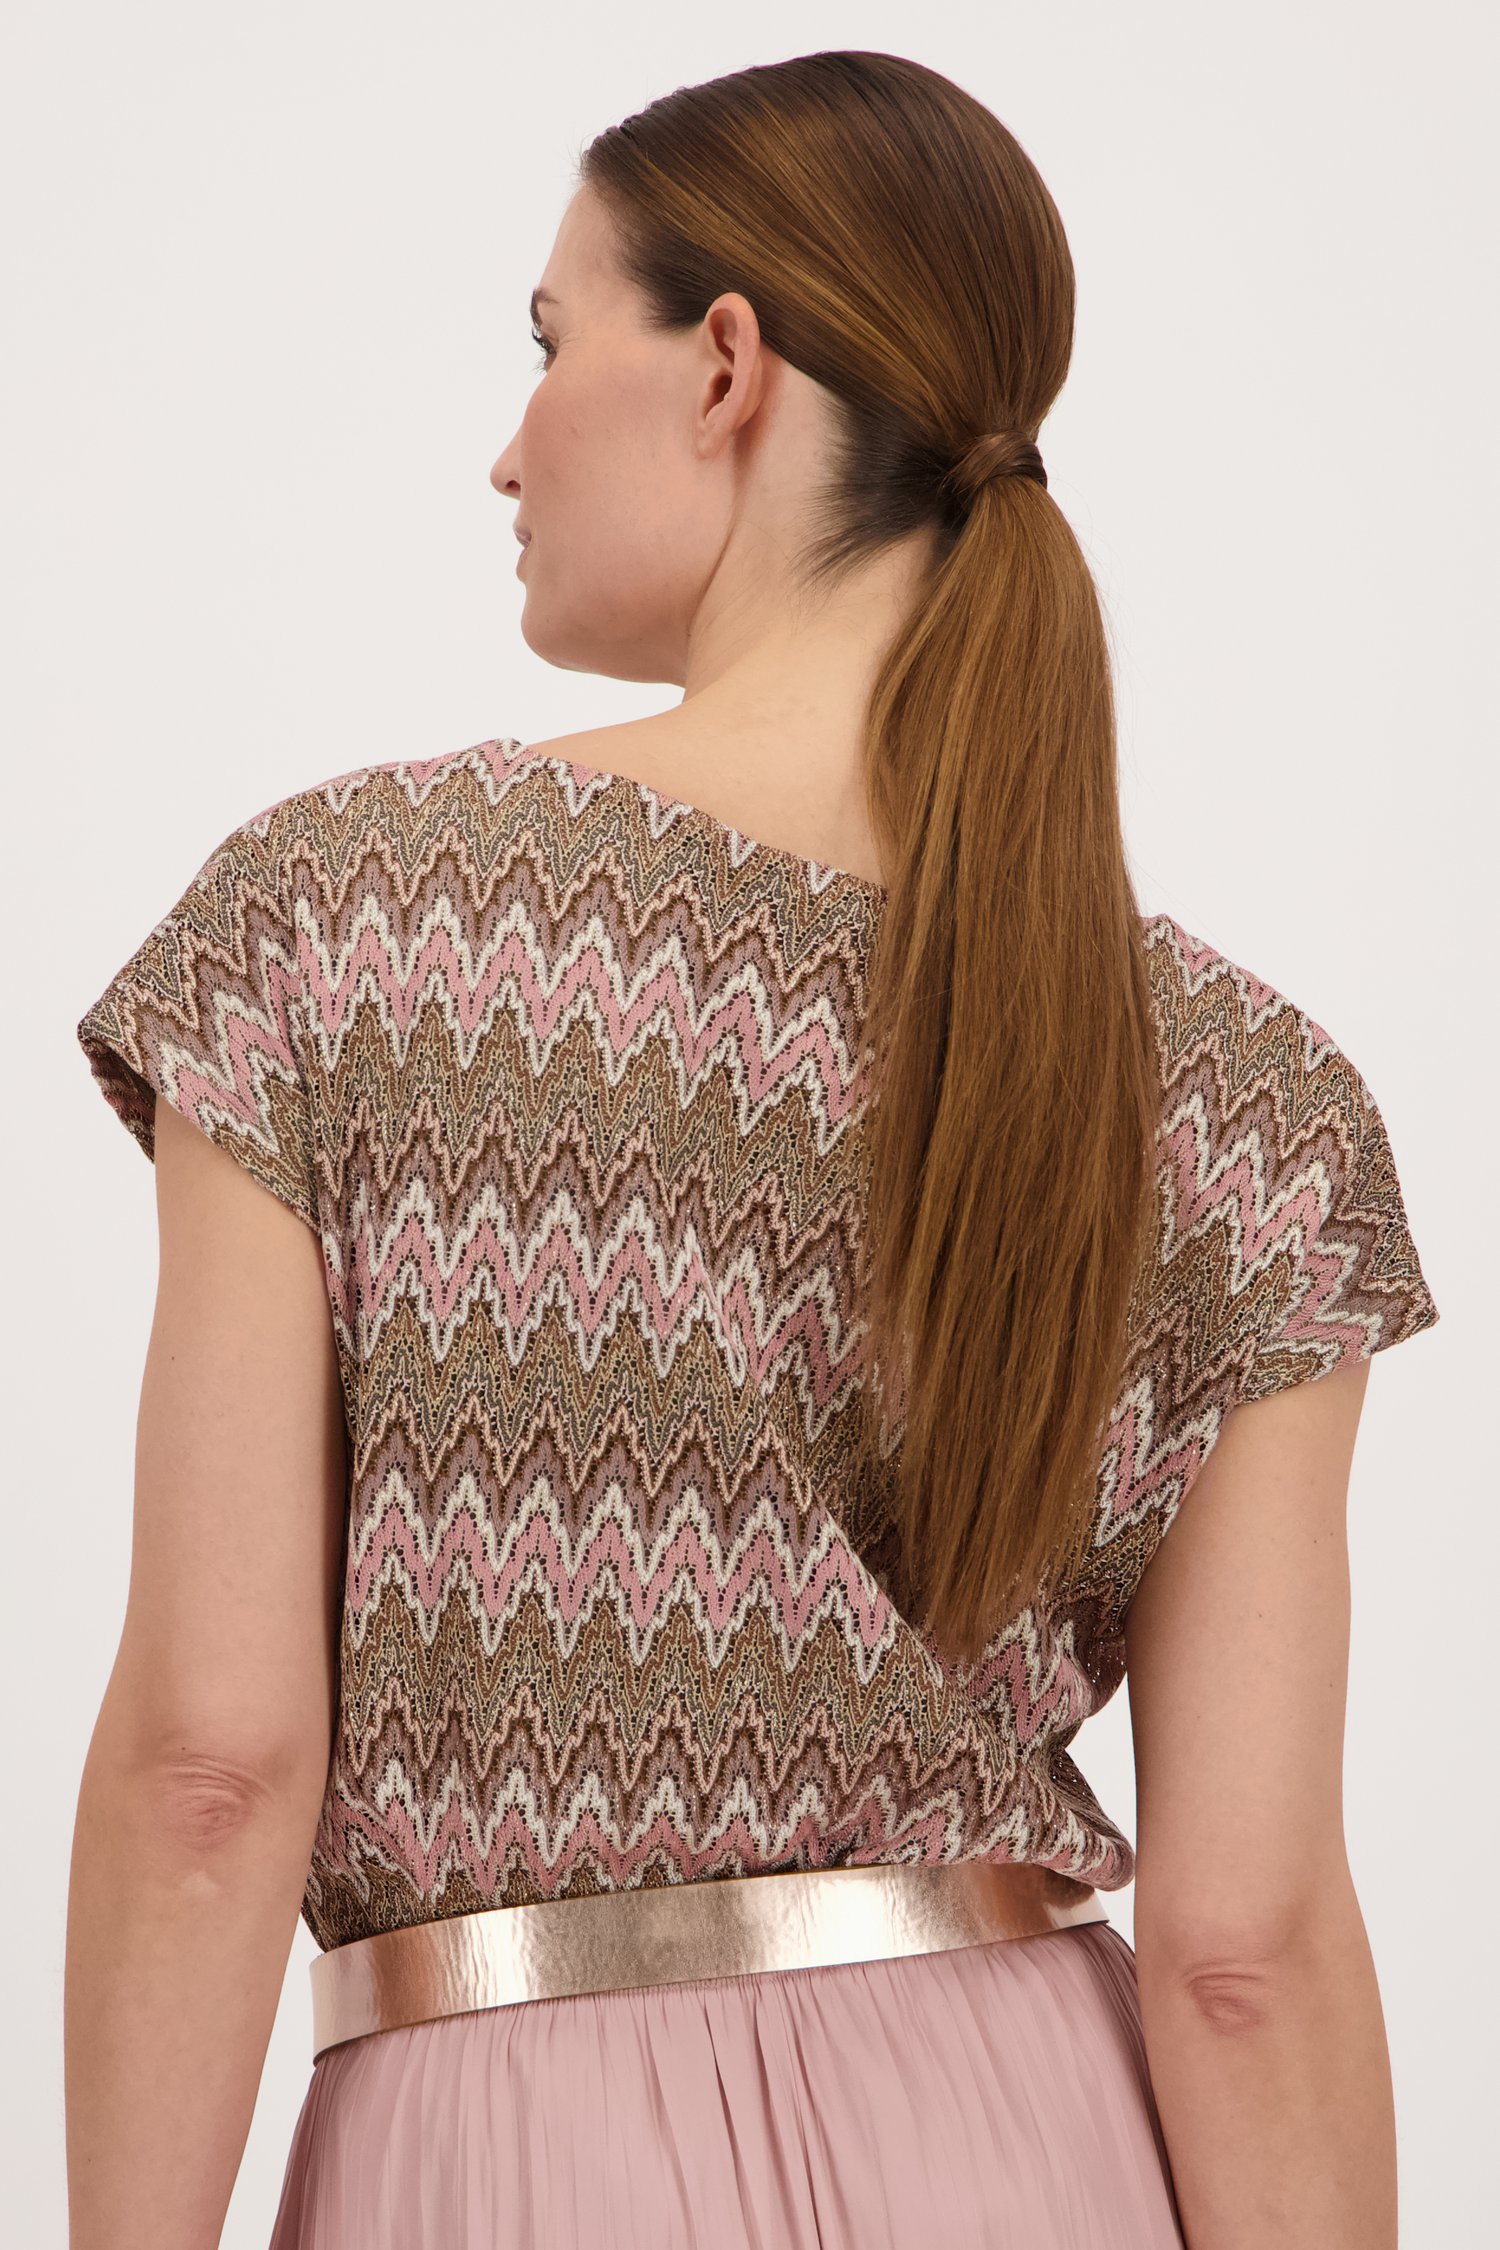 T-shirt kaki avec motif au crochet de More & More pour Femmes